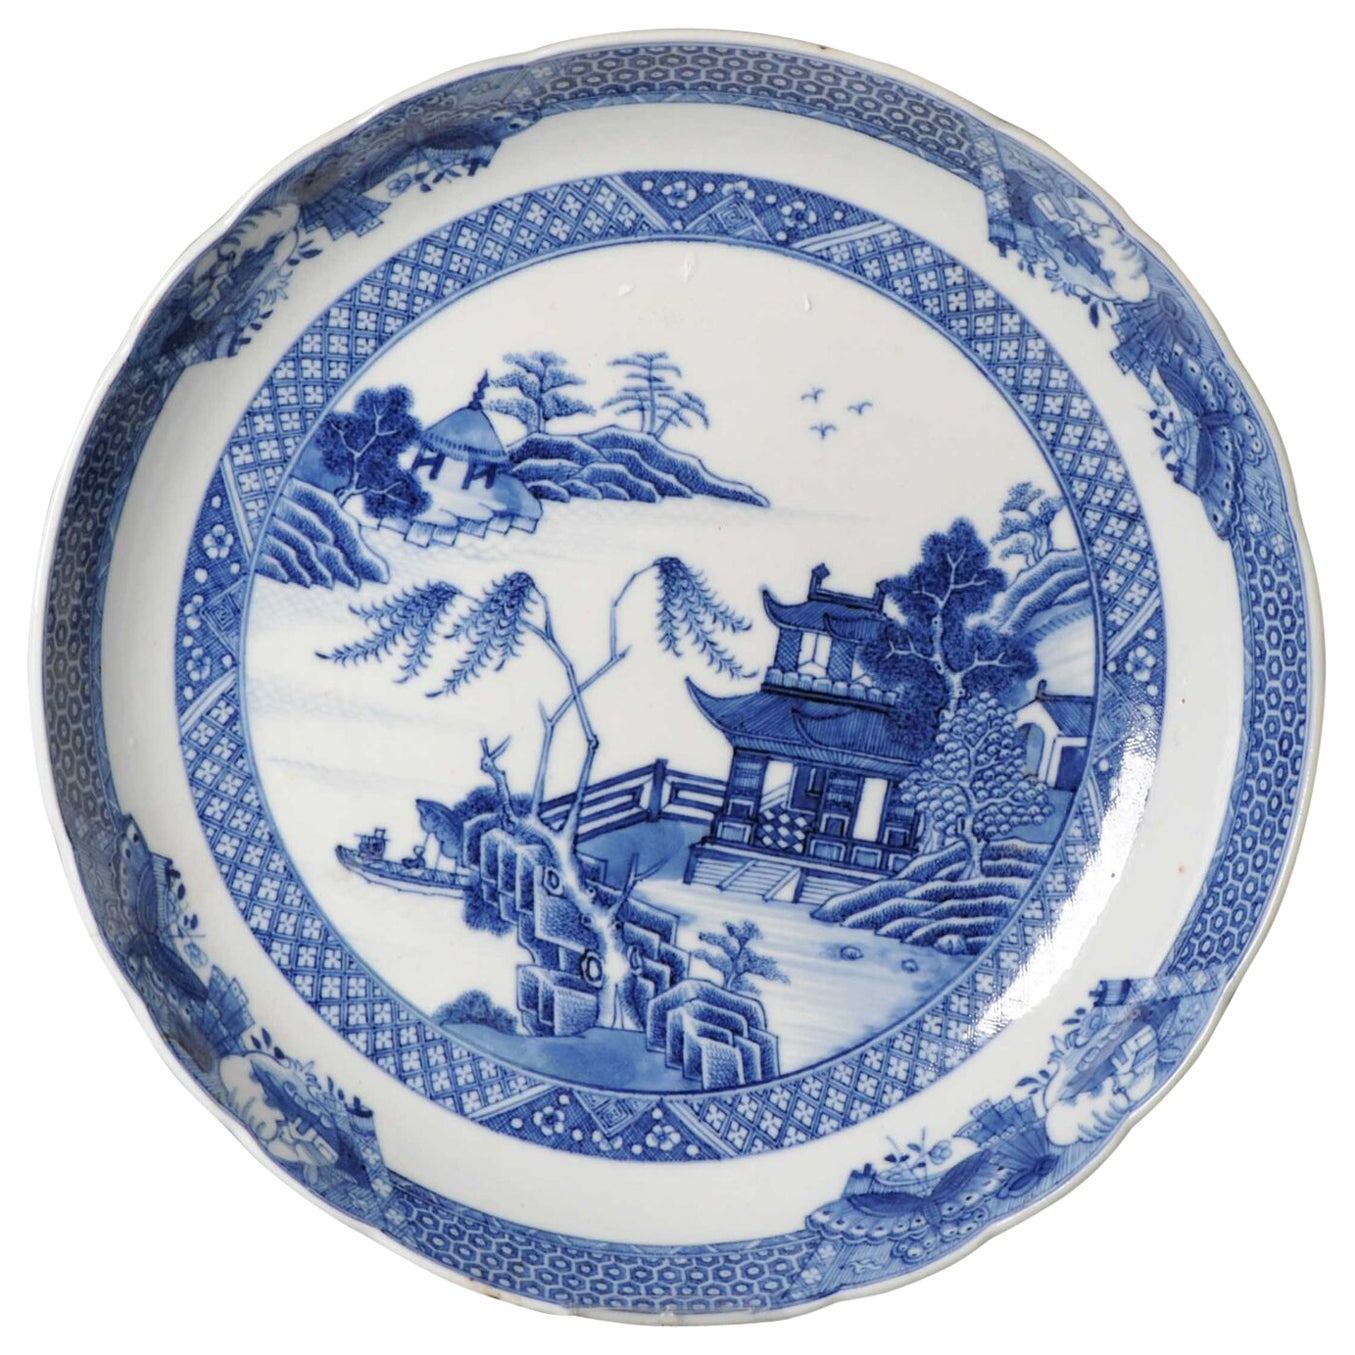 Chinesische Porzellanschale aus der Qianlong-Periode mit Flusslandschaft in kaiserlicher Qualität, 18 Karat